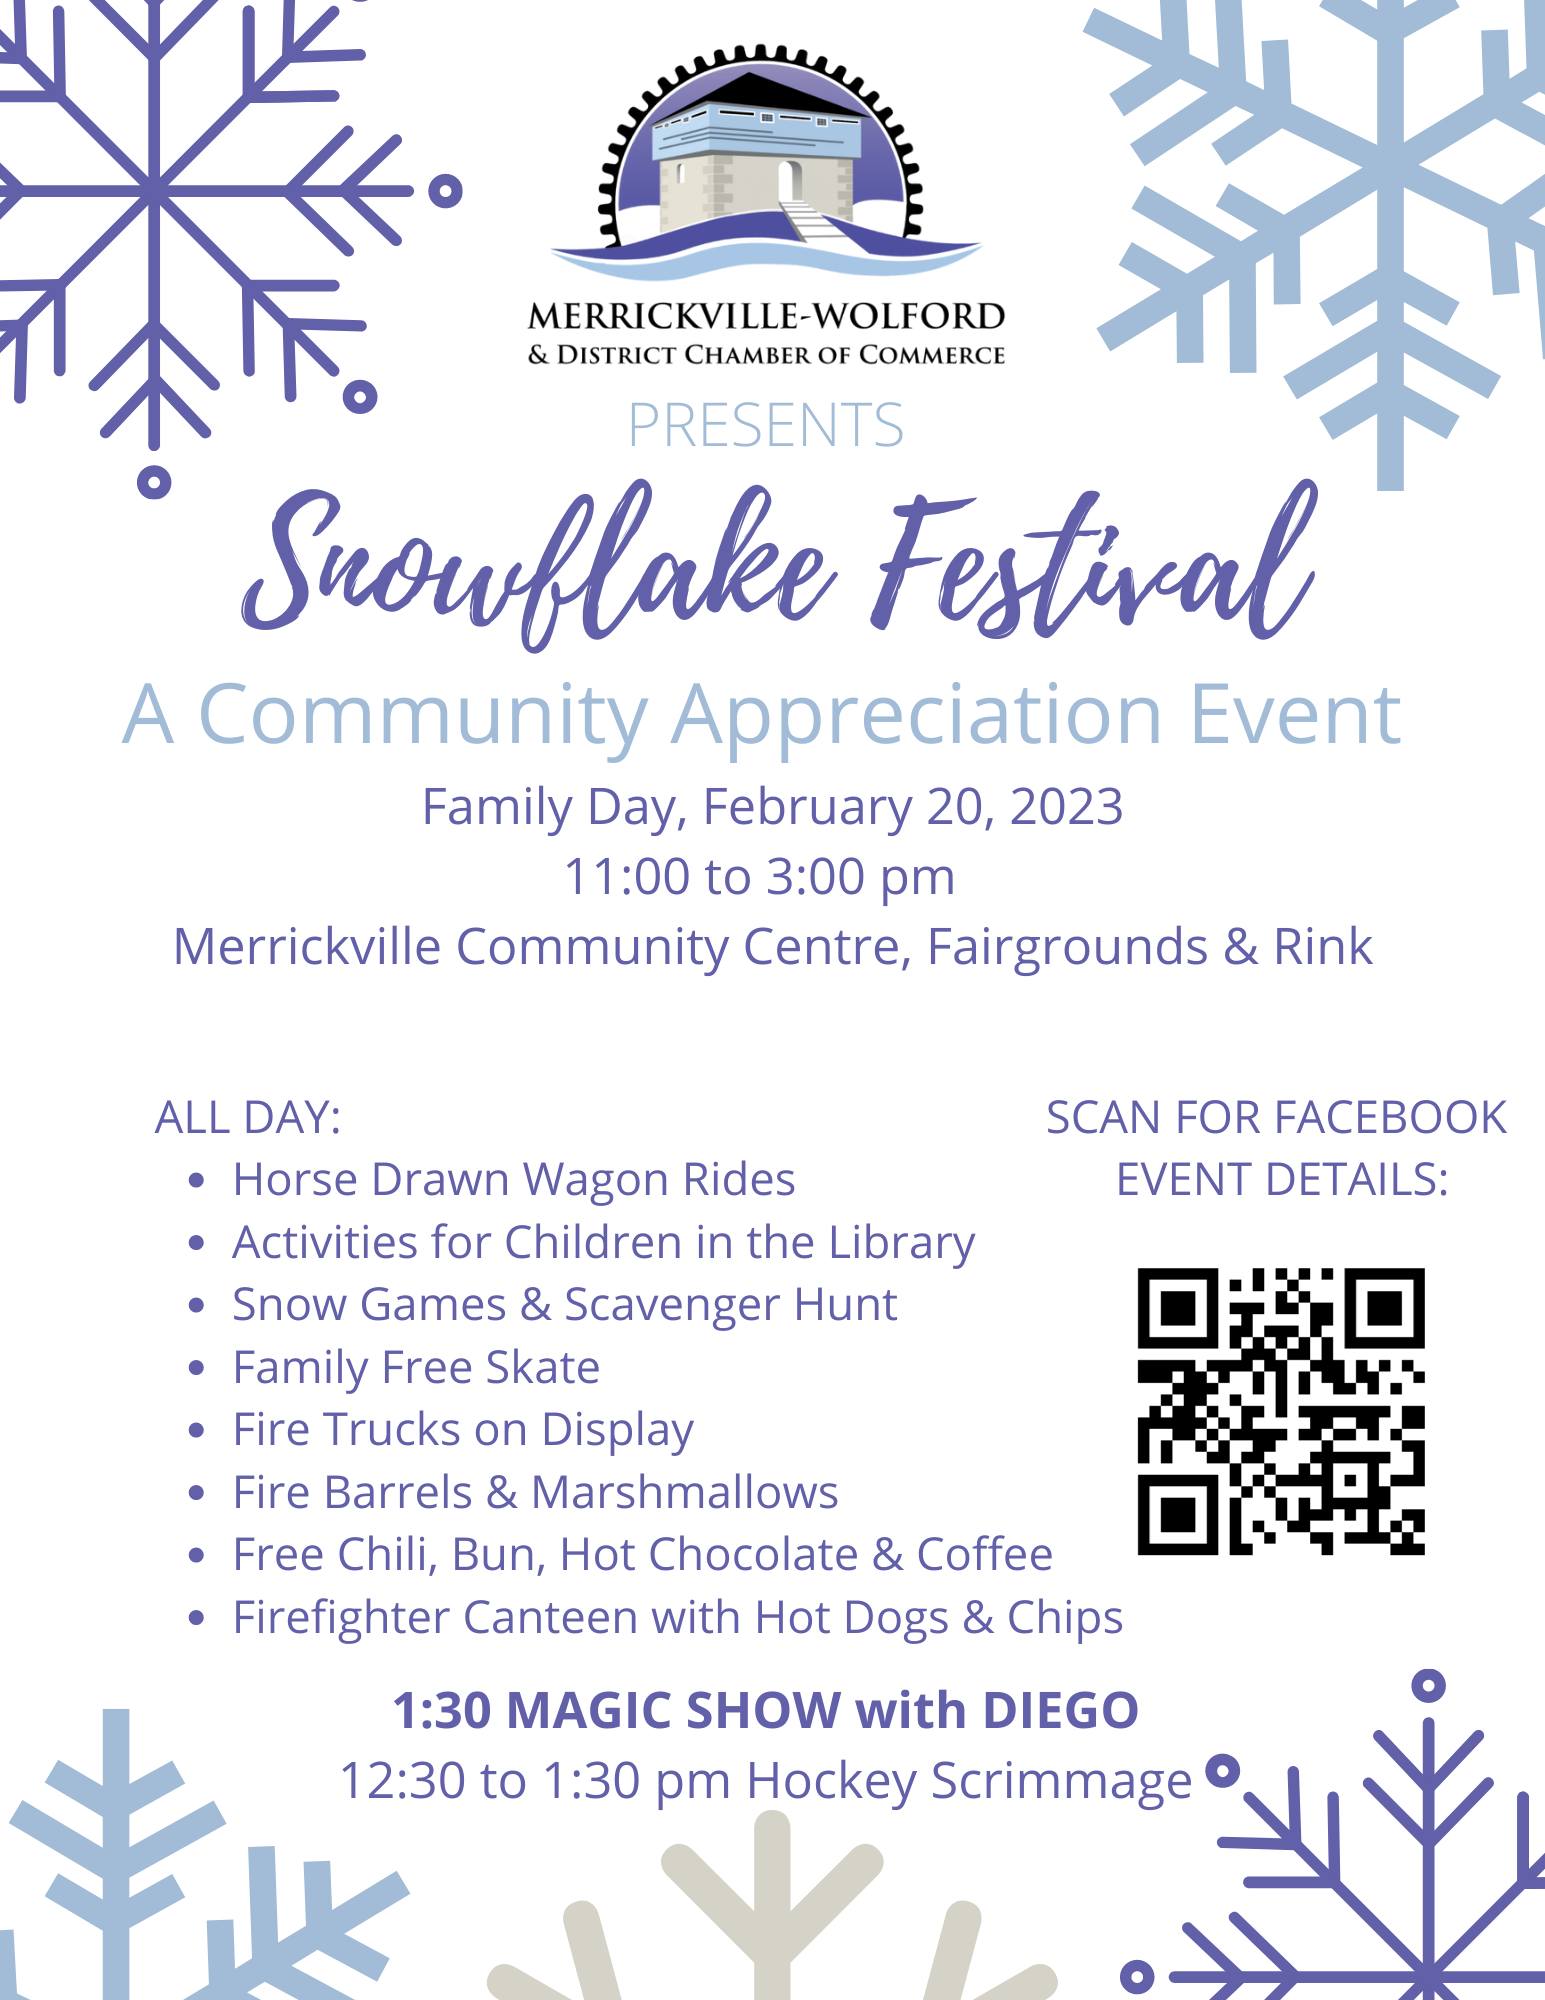 Merrickville's Snowflake Festival @ Merrickville Community Centre, Fairgrounds & Rink